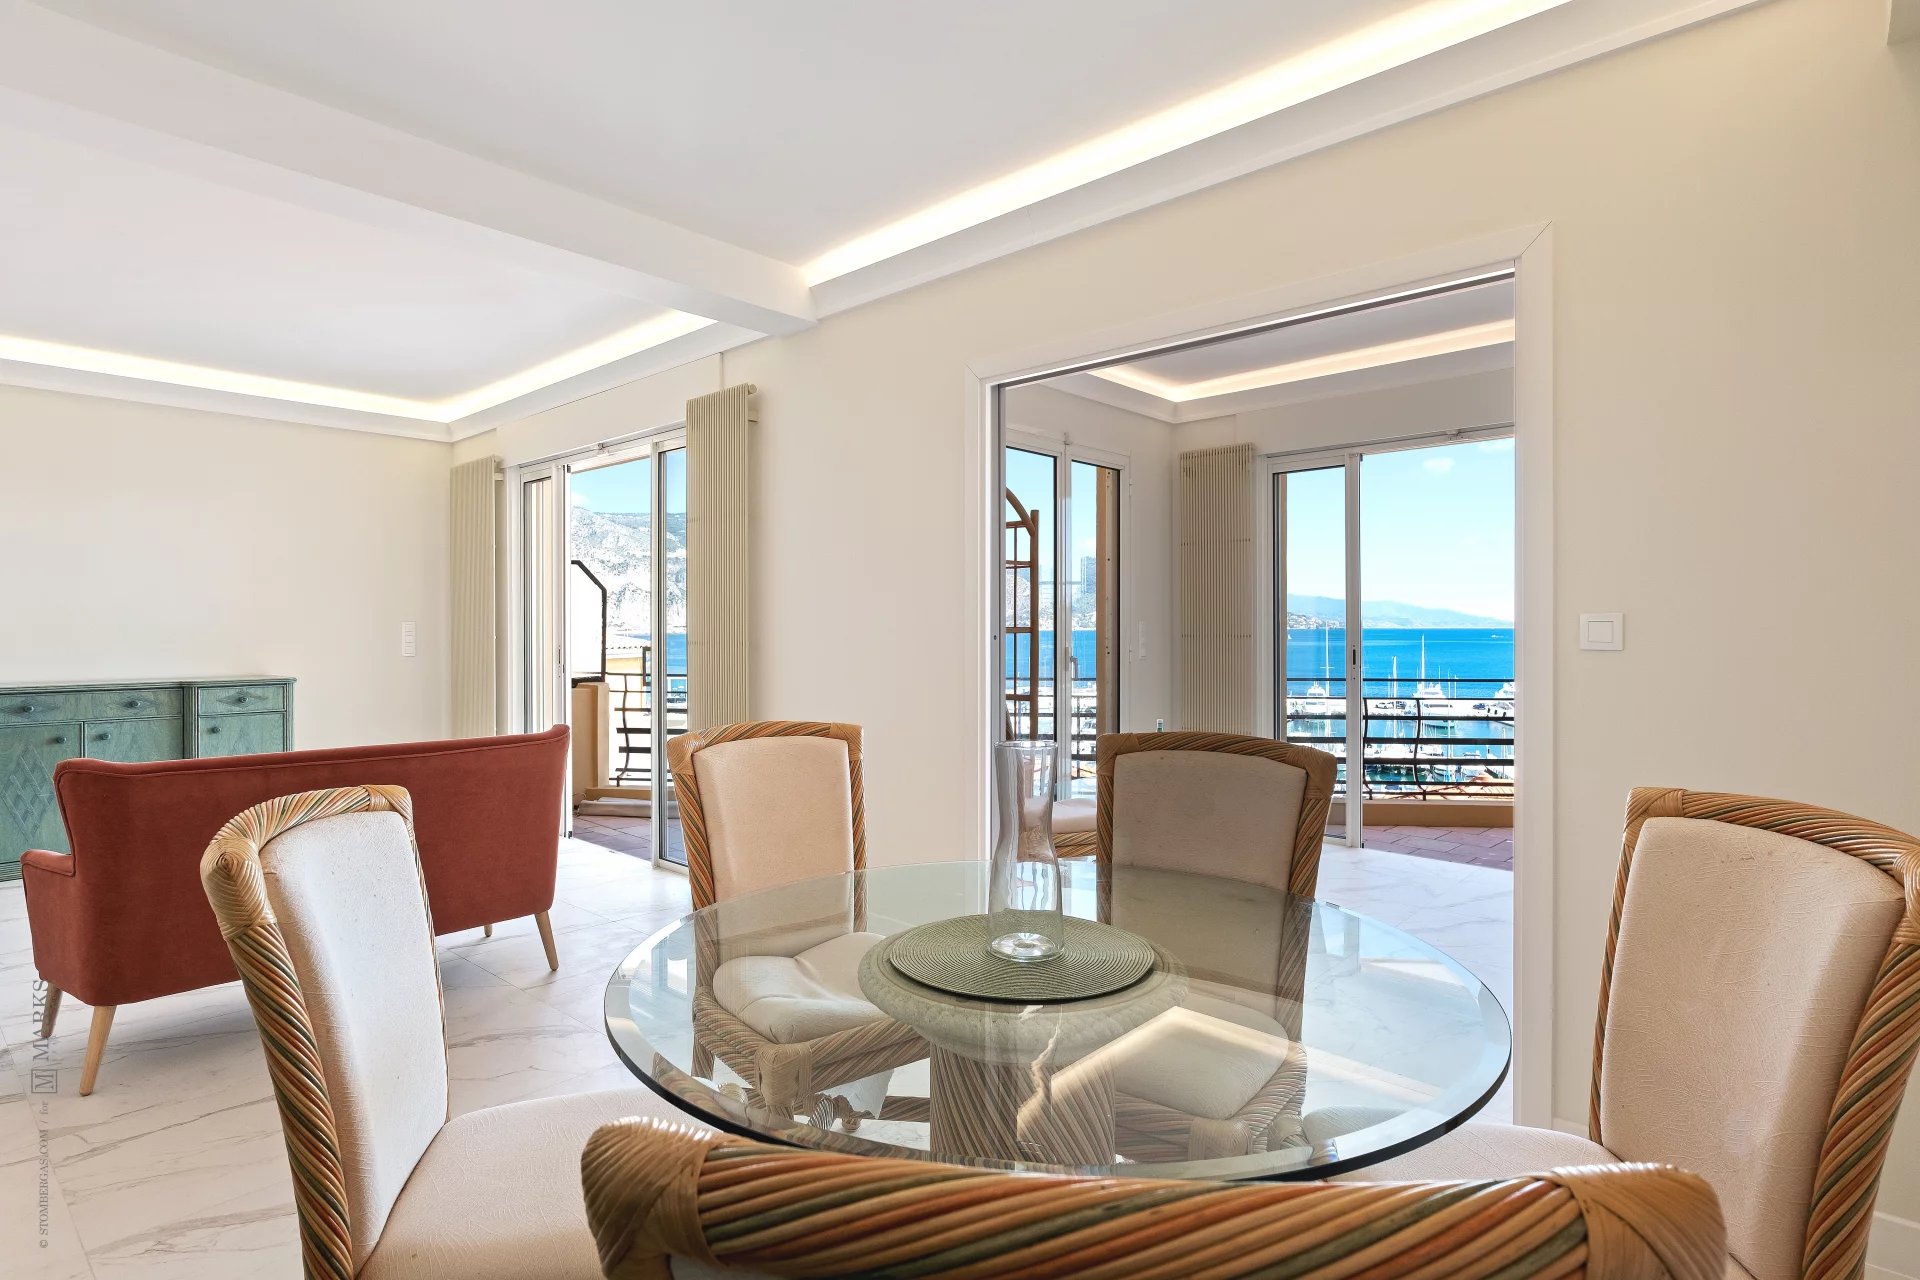 6876858-Appartement entièrement rénové avec une vue mer sublime